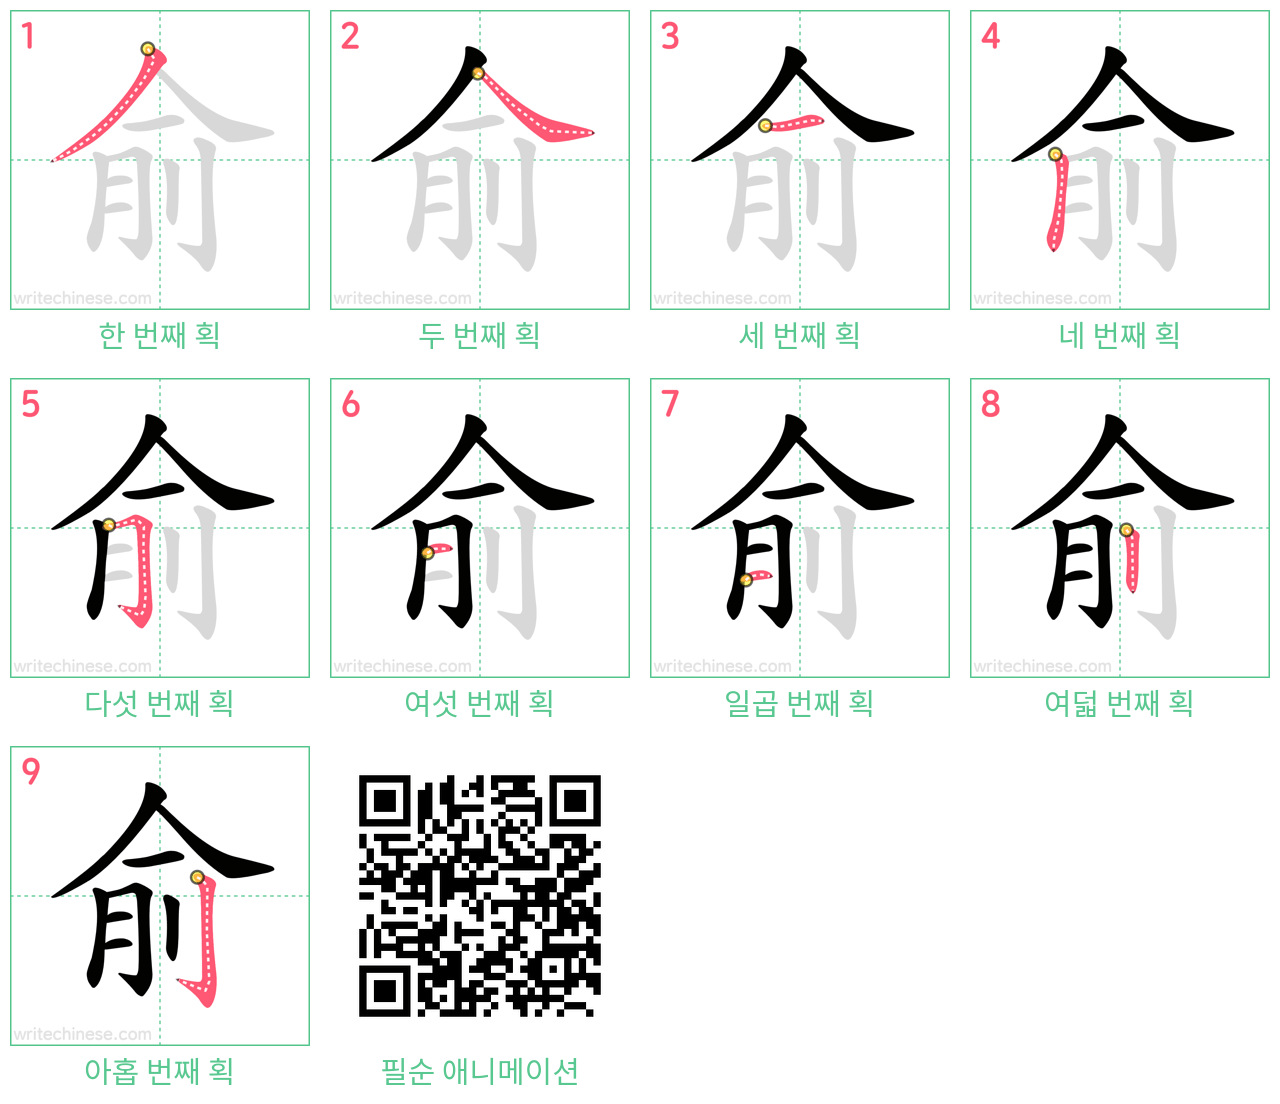 俞 step-by-step stroke order diagrams